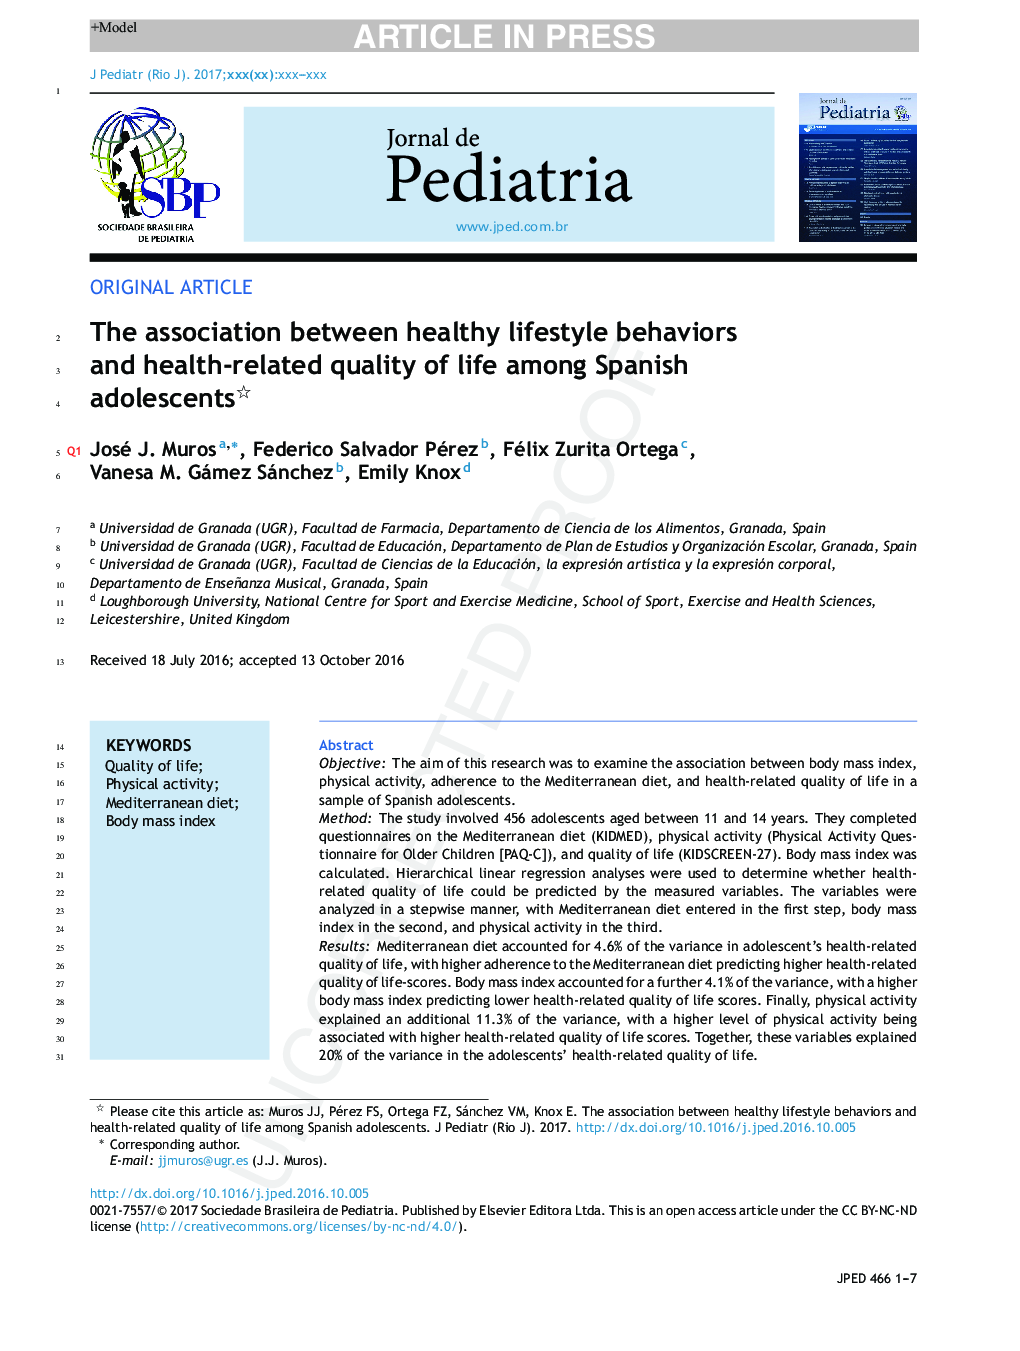 ارتباط بین رفتارهای زندگی سالم و کیفیت زندگی مرتبط با سلامت نوجوانان 